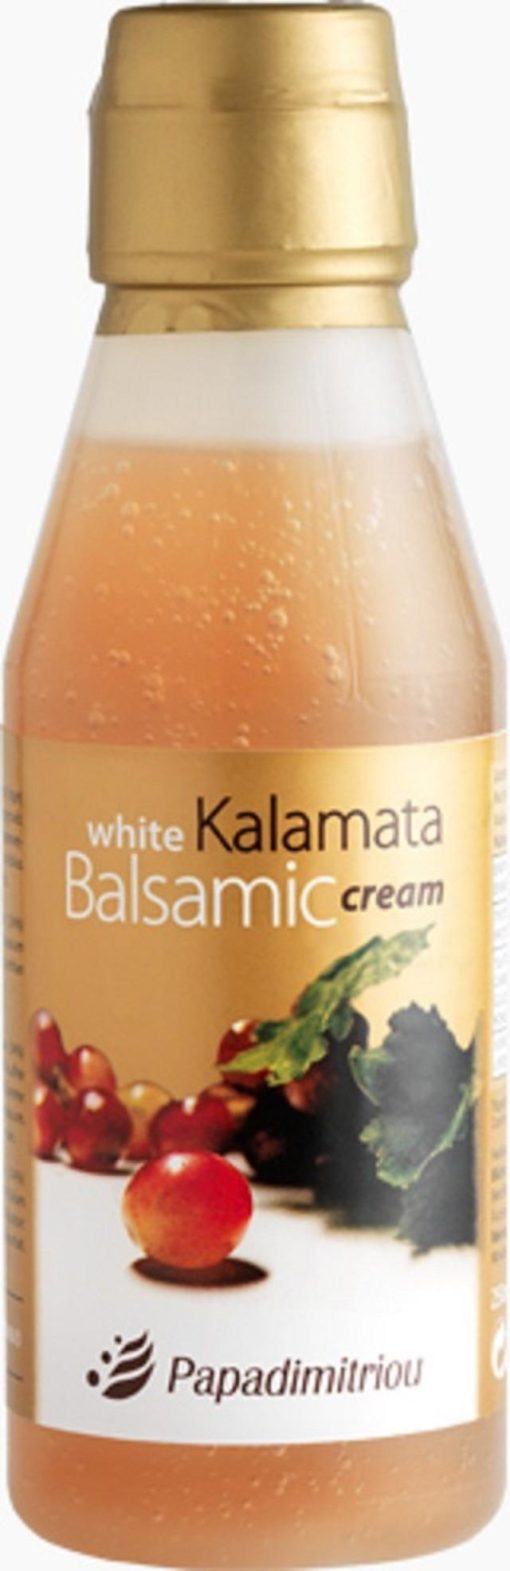 Λευκή Κρέμα Μπαλσάμικου Καλαμάτα Παπαδημητρίου (250 ml)